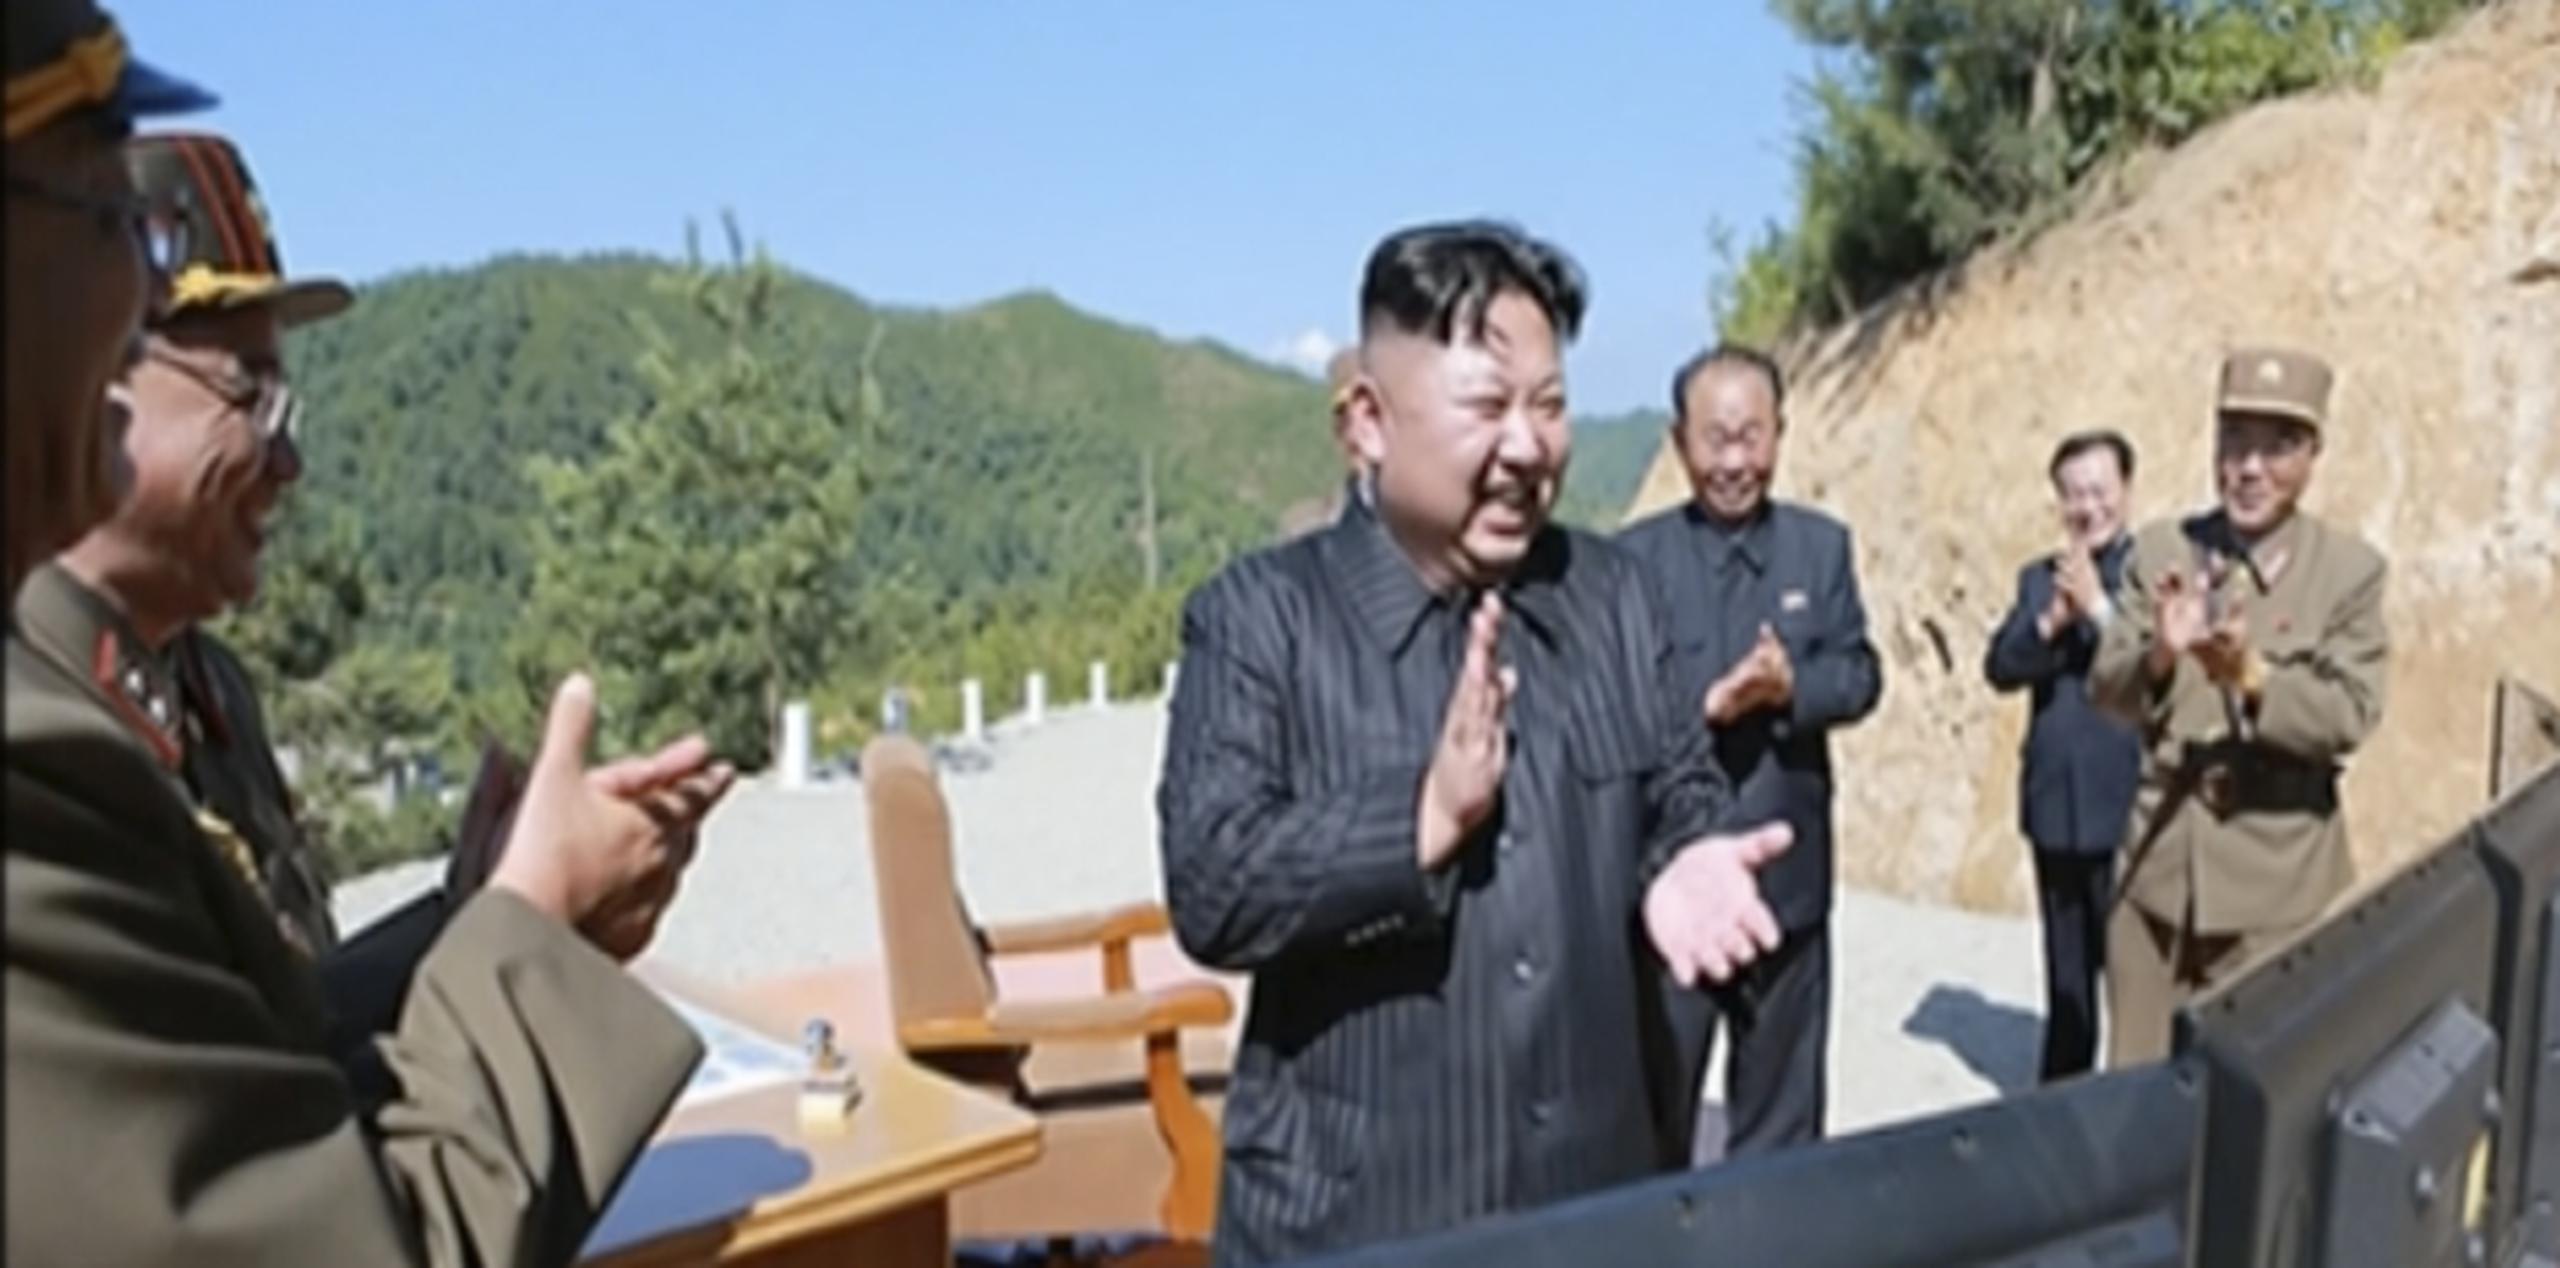 El presidente norcoreano aplaude tras una de sus pruebas con misiles. (Archivo)